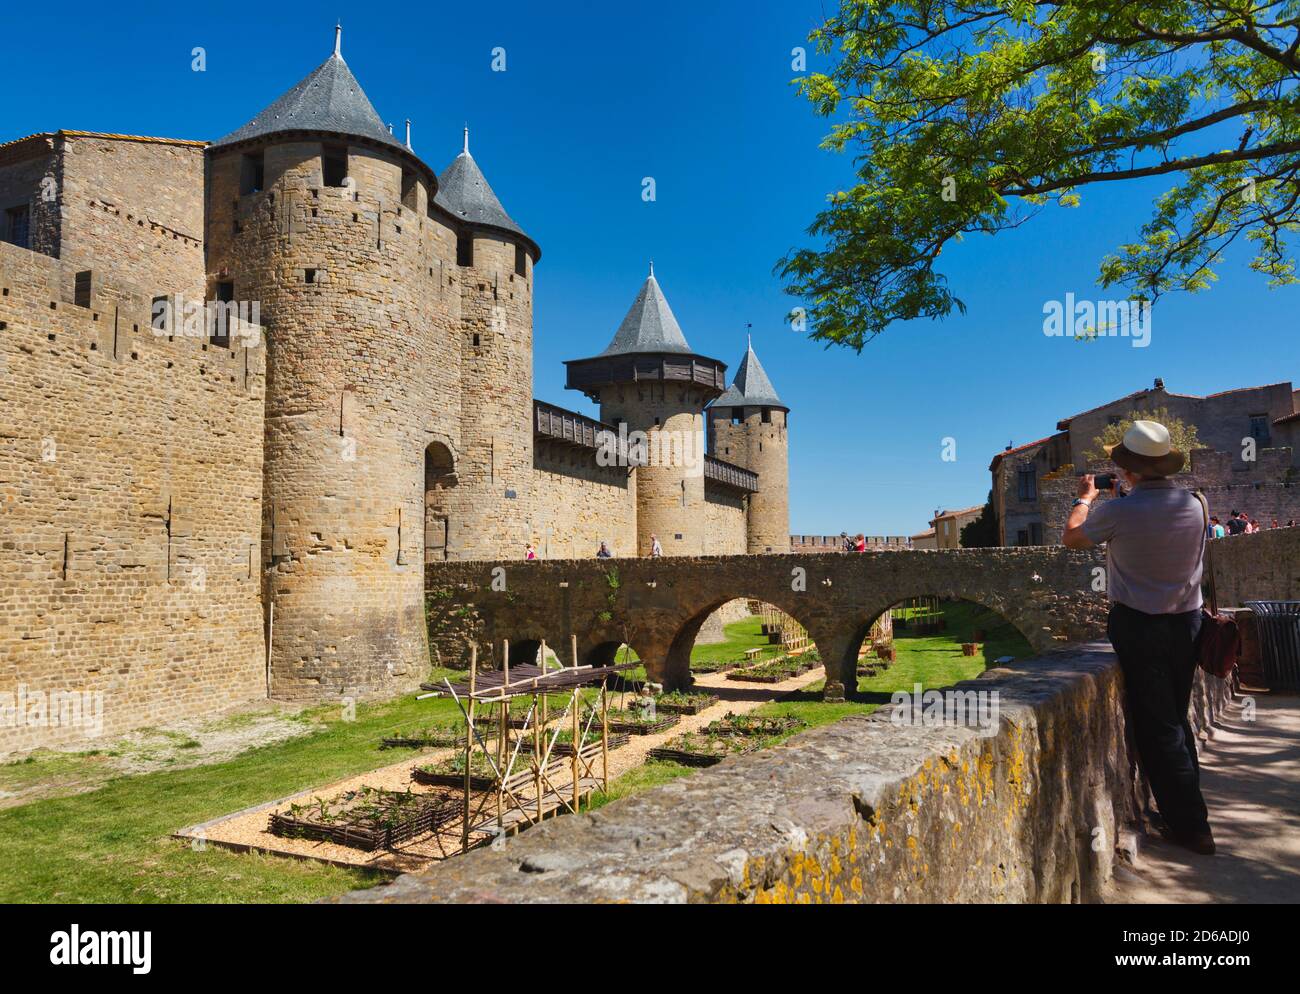 Carcassonne, Languedoc-Roussillon, France. Le Château; une forteresse dans les murs de la ville fortifiée. La Cité de Carcassonne est un H mondial de l'UNESCO Banque D'Images